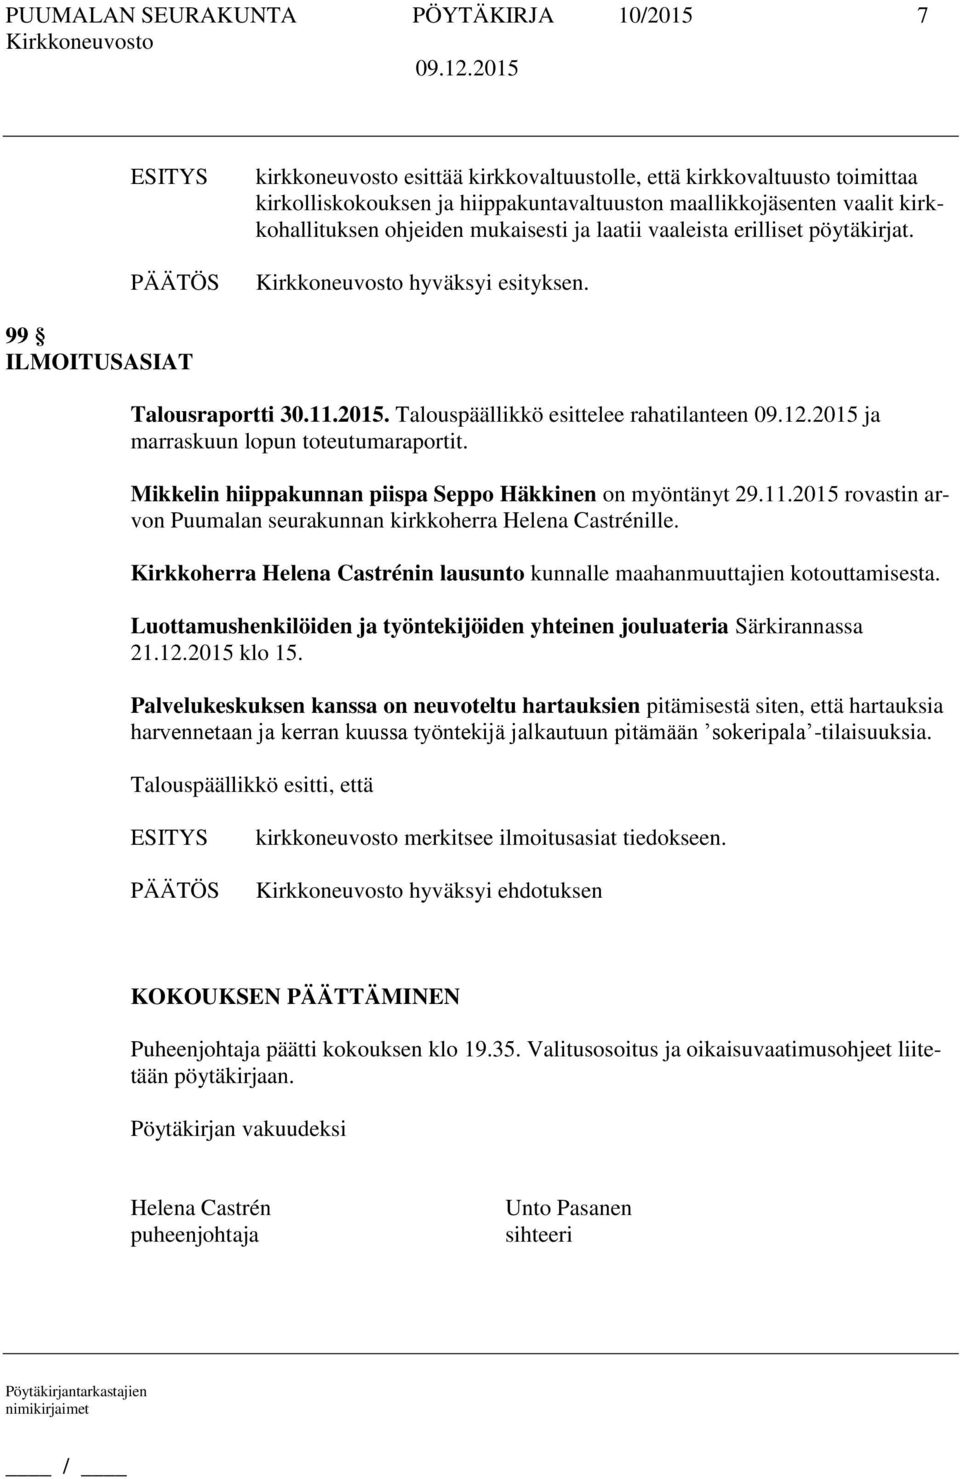 Talouspäällikkö esittelee rahatilanteen ja marraskuun lopun toteutumaraportit. Mikkelin hiippakunnan piispa Seppo Häkkinen on myöntänyt 29.11.